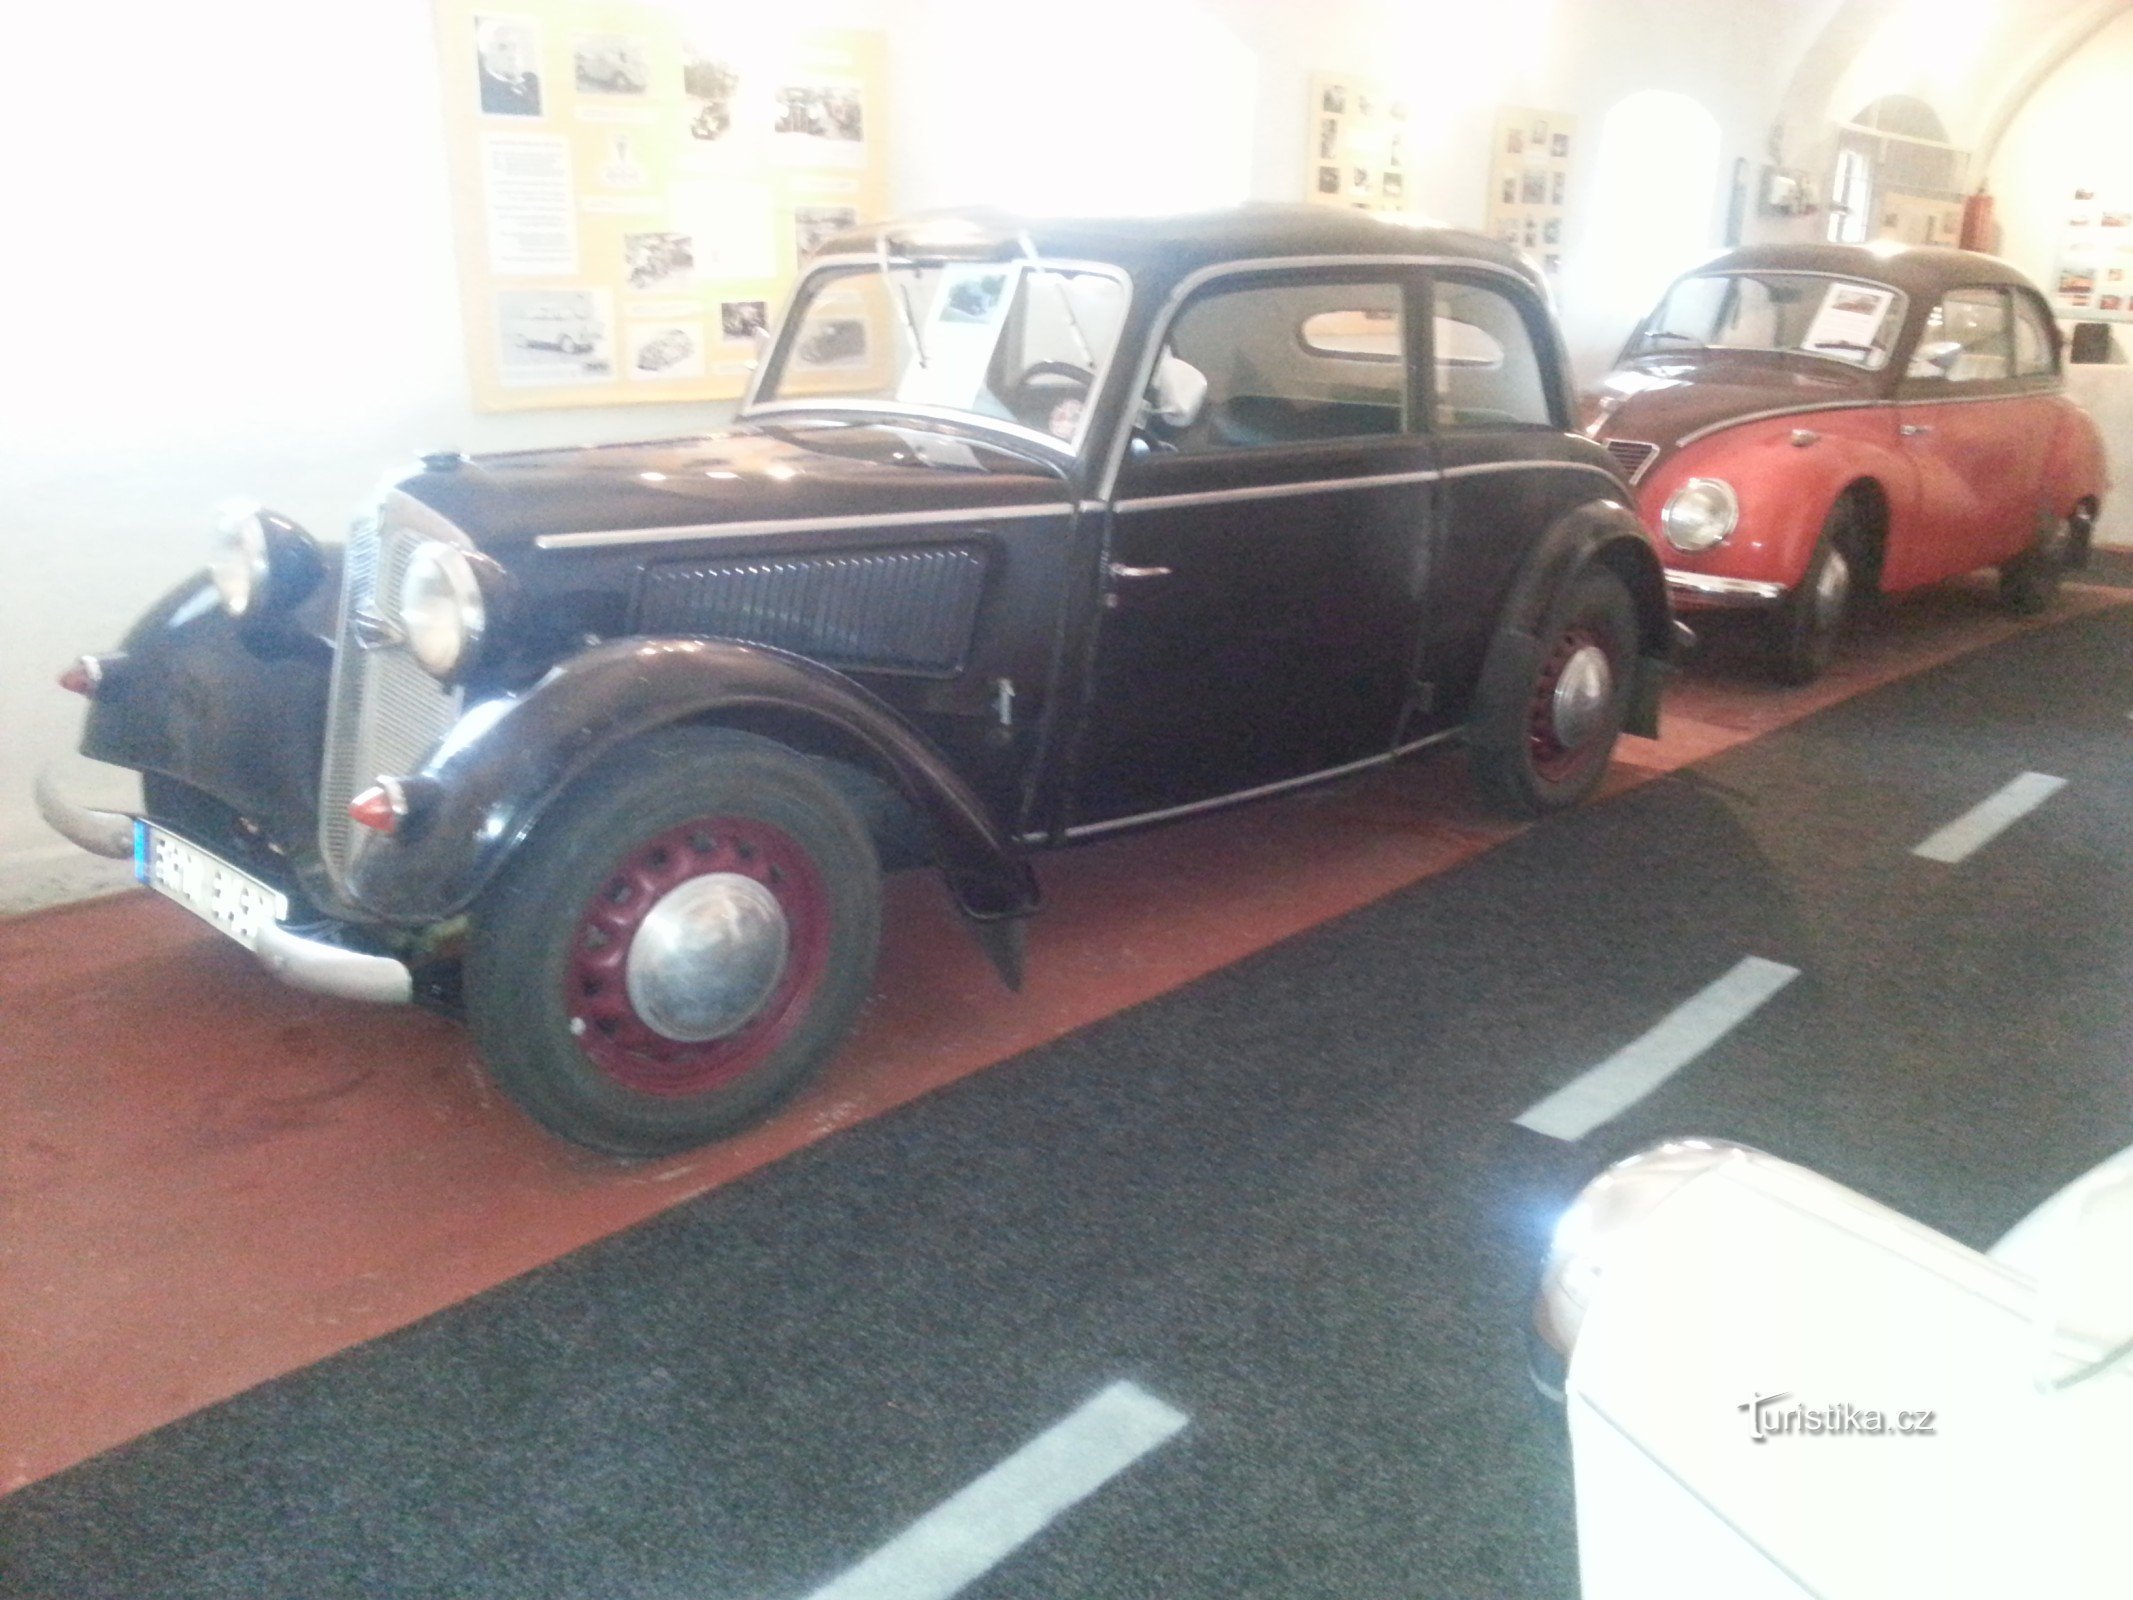 automobili iz 30-ih